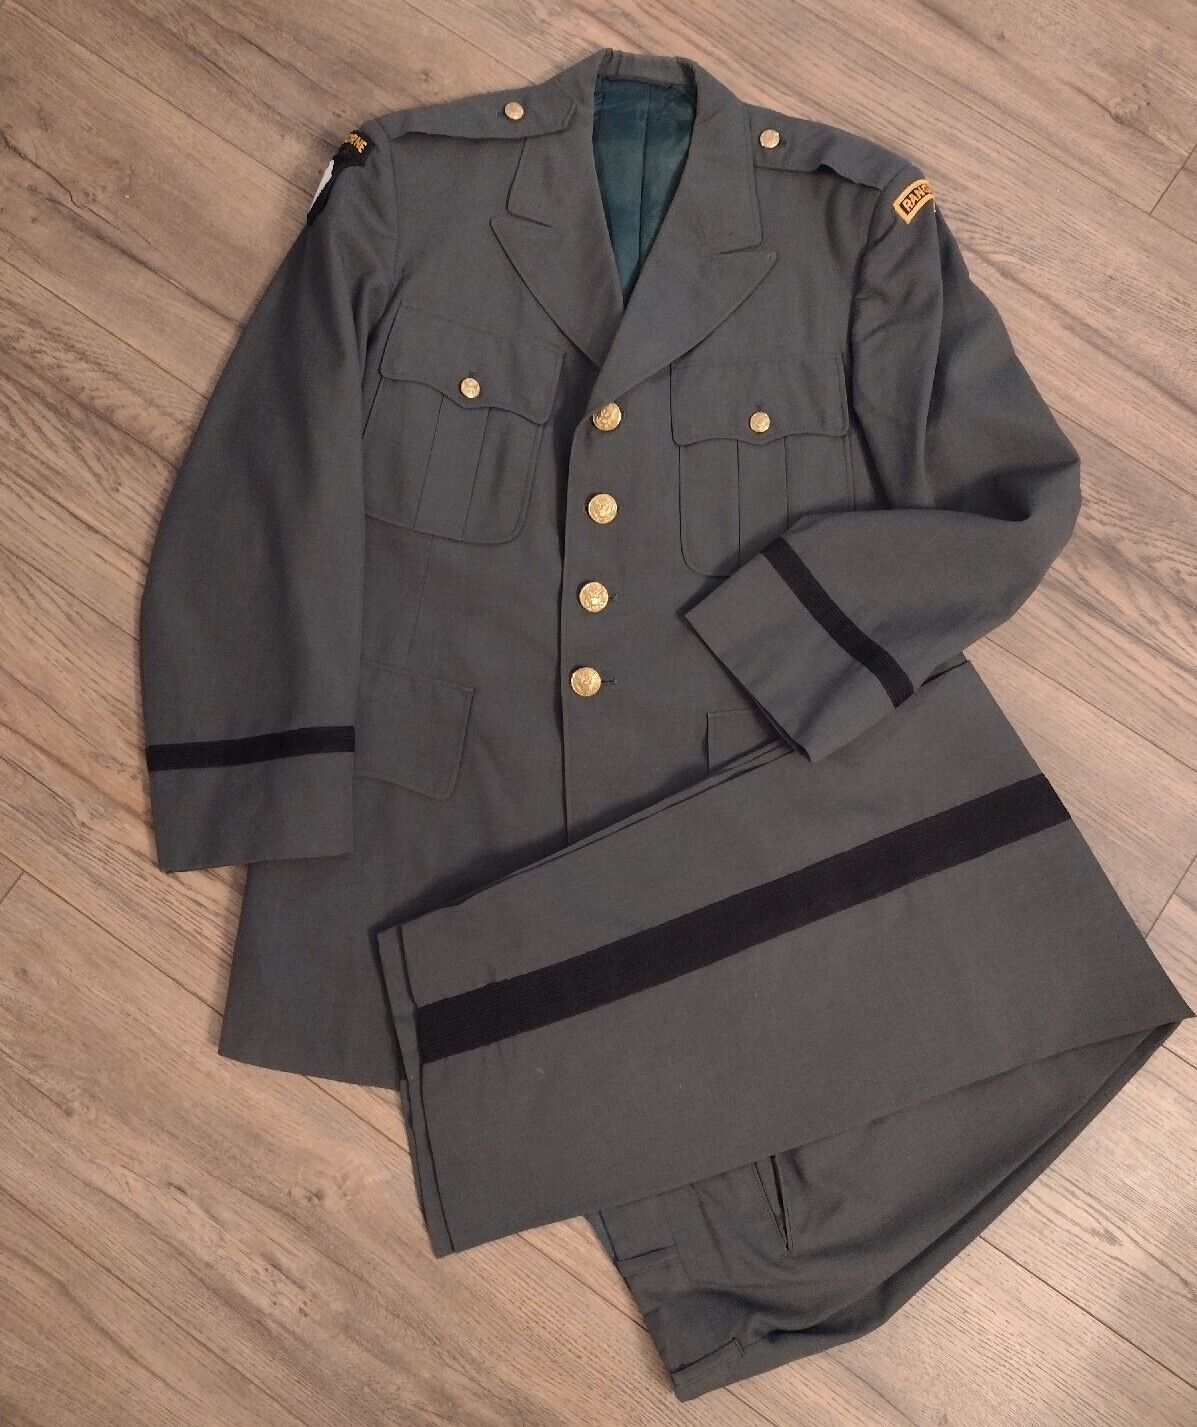 Vietnam Era Uniform US Army Formal Suit Airborne Ranger Jacket & Pants Light Wt